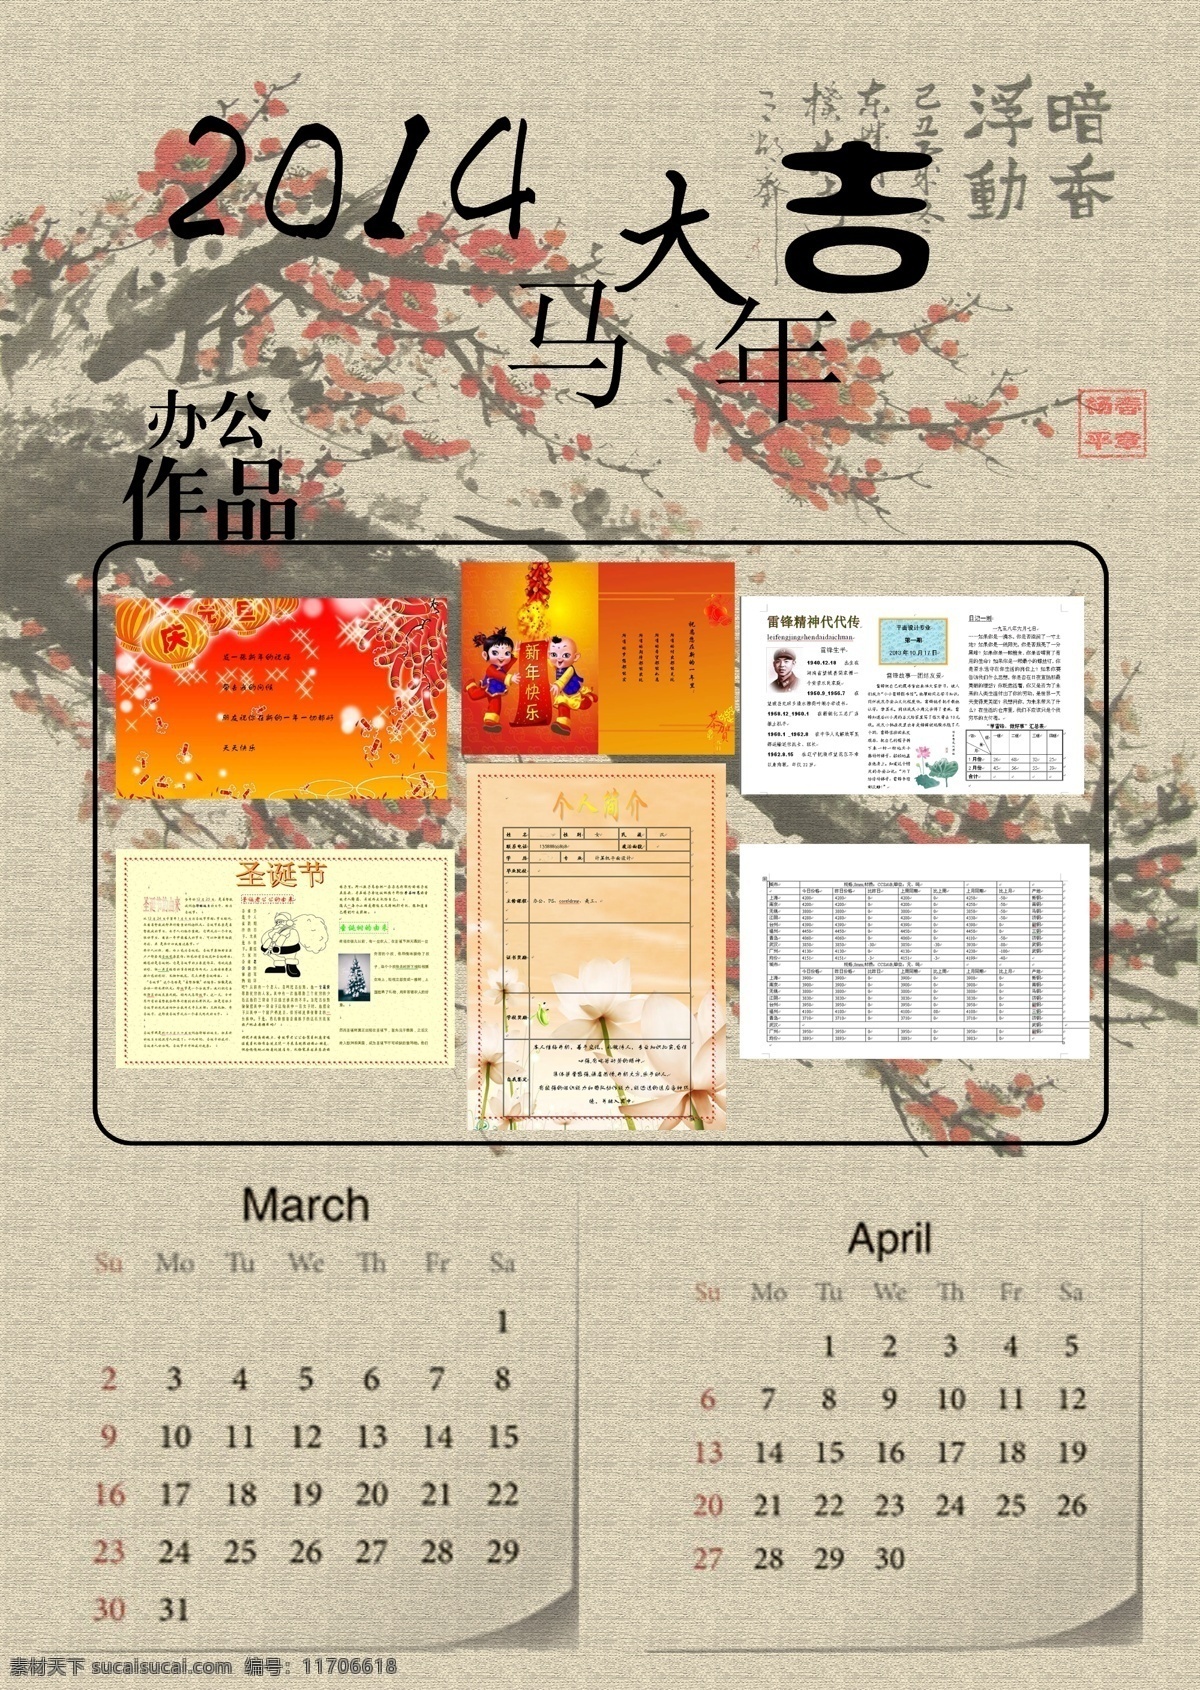 挂历设计3 4月 挂历设计 中国风